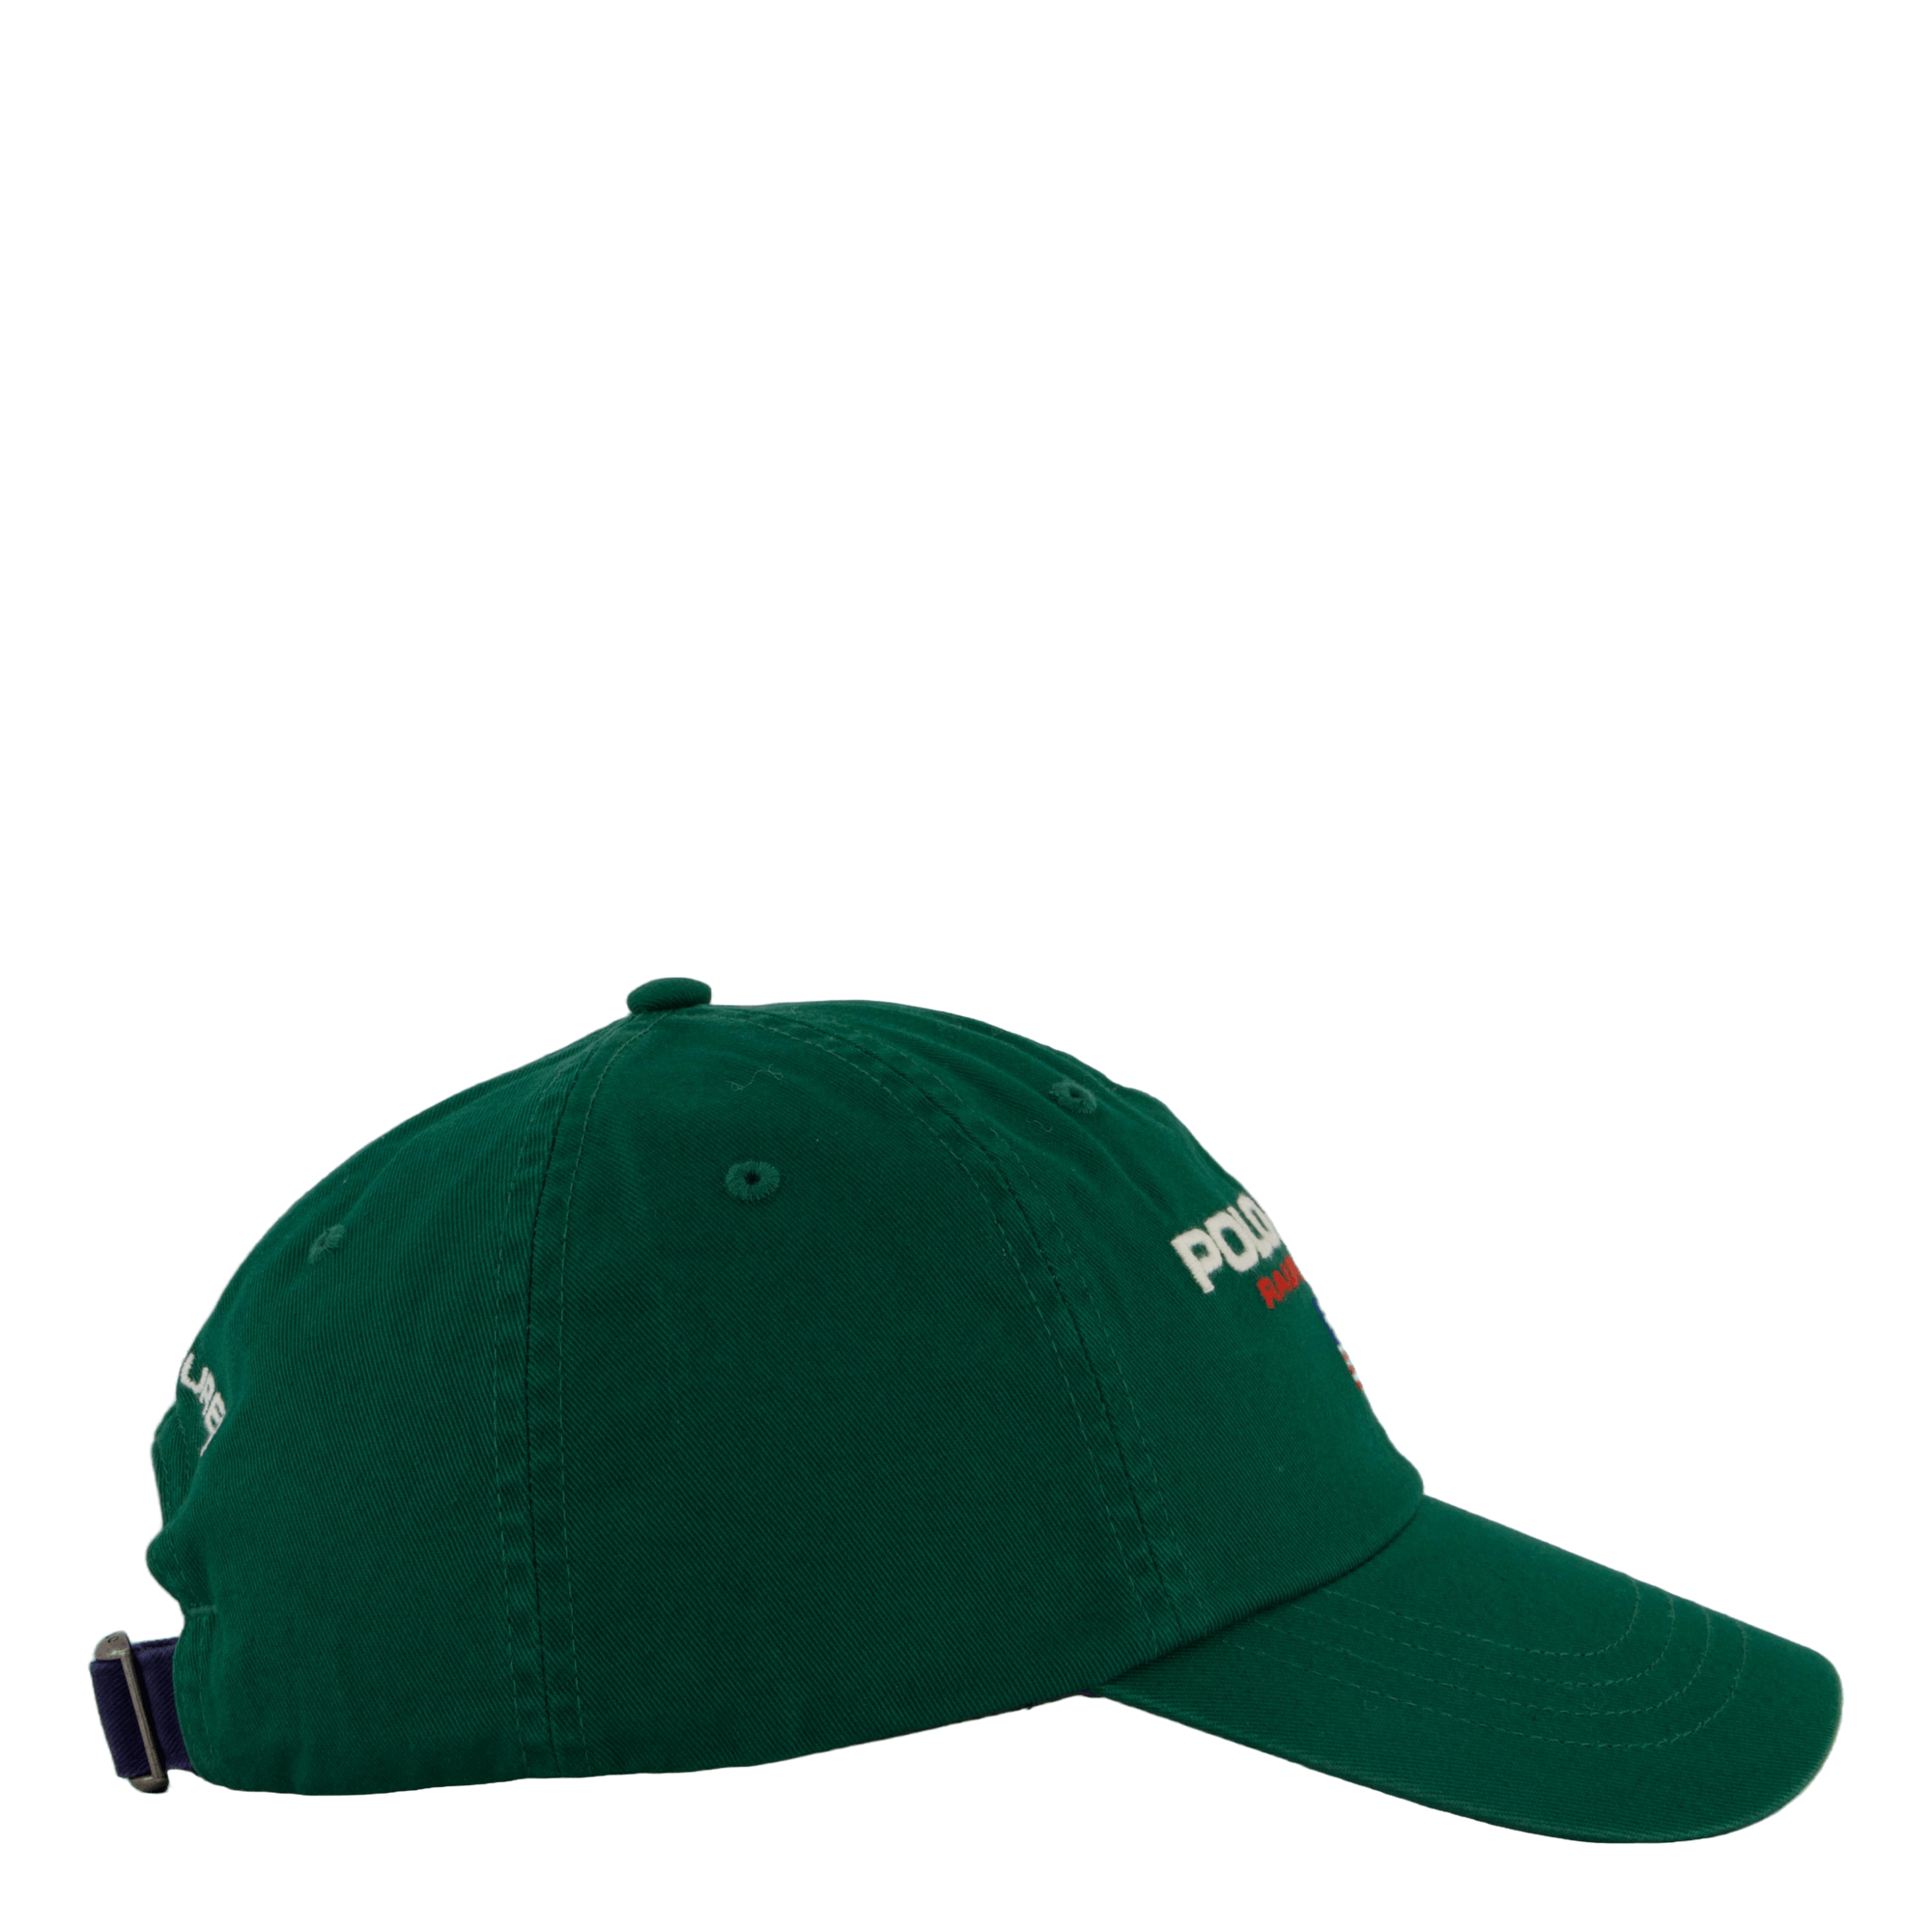 16/1 Twill-cap-hat Tennis Green